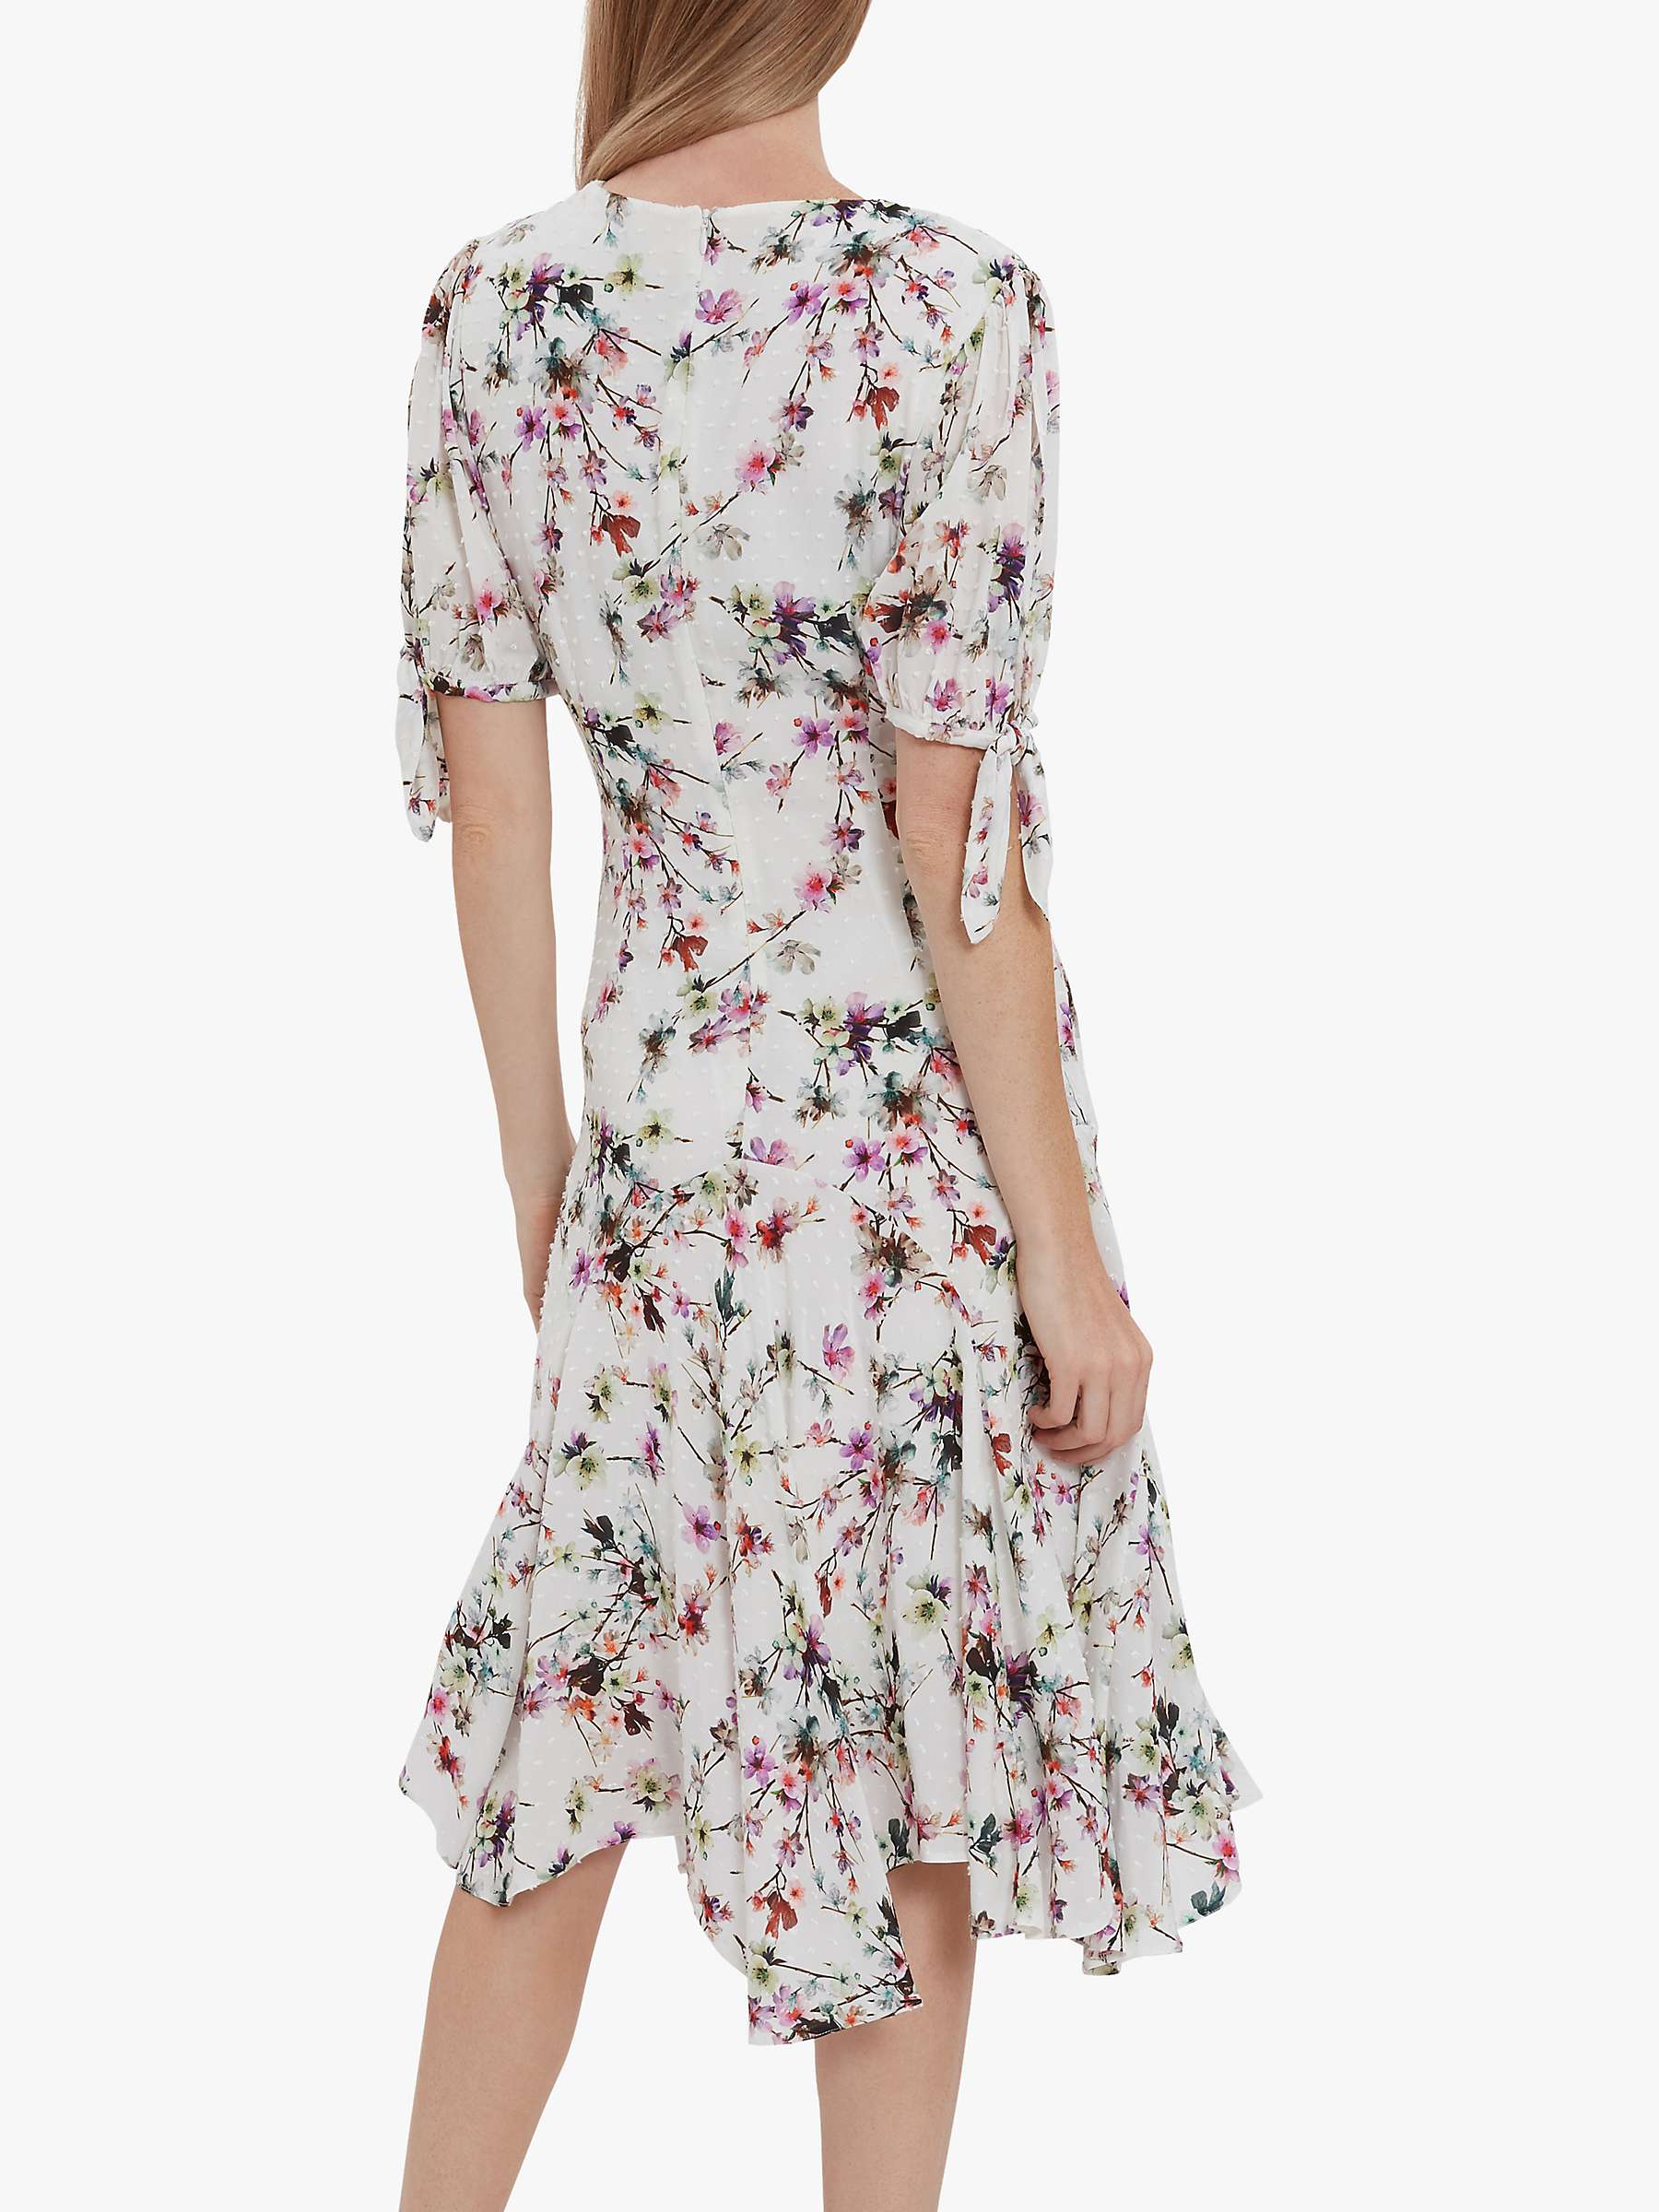 Buy Gina Bacconi Dita Floral Jacquard Midi Dress, White/Pink Online at johnlewis.com